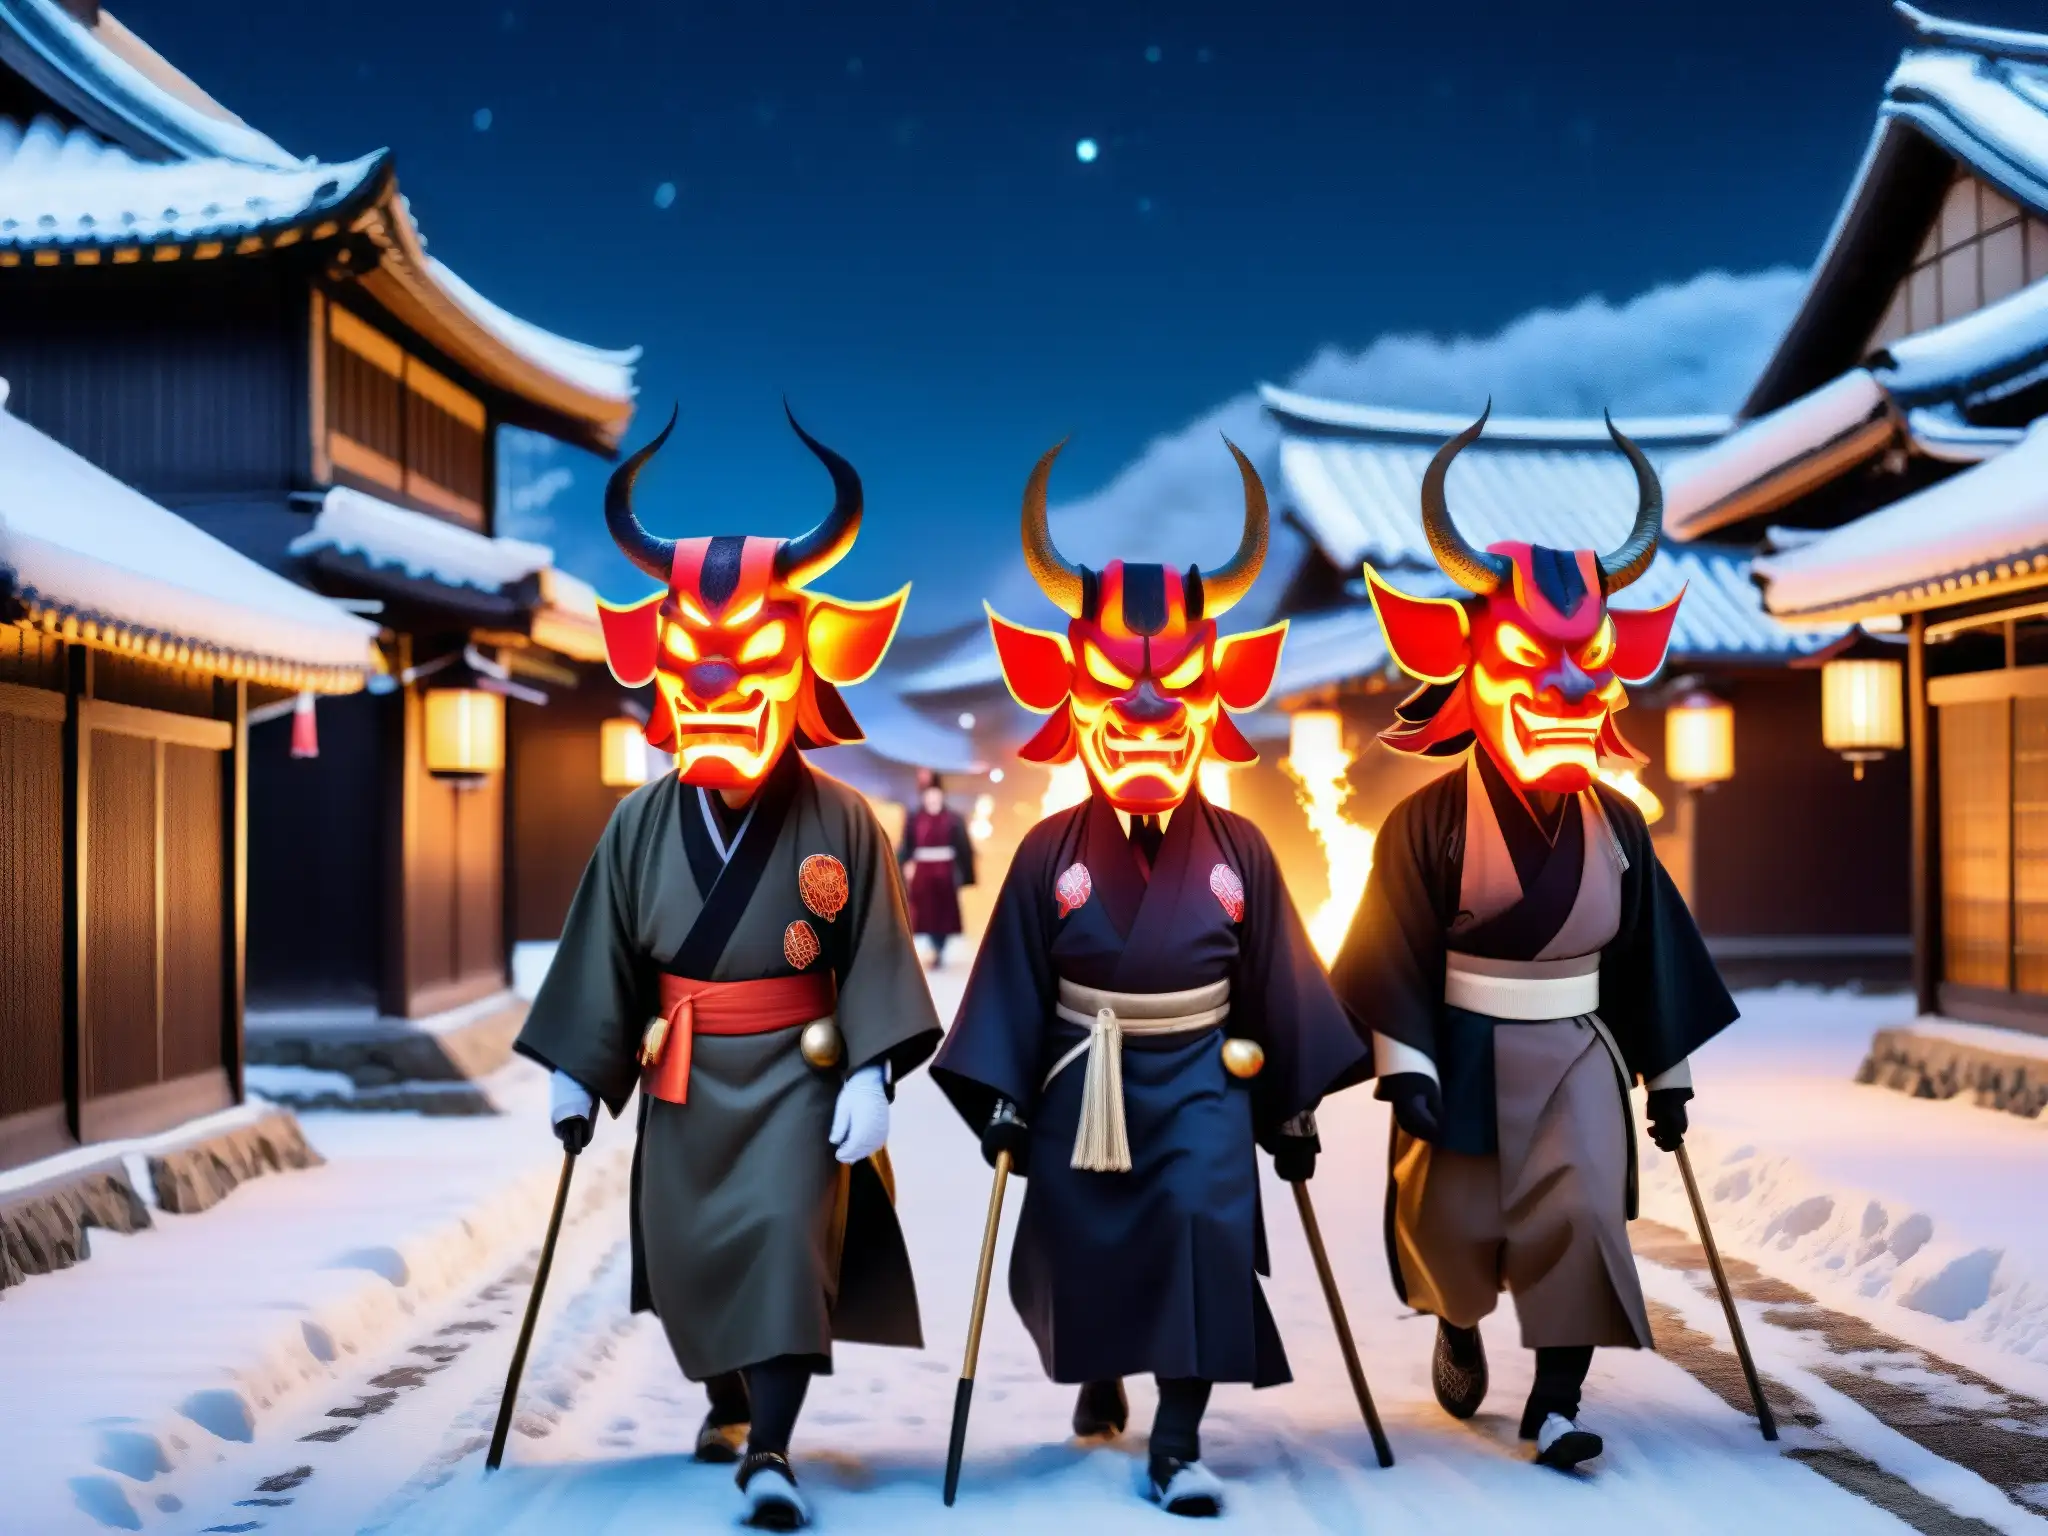 Un grupo de hombres con máscaras de demonio Namahage, llevando antorchas, caminan por un pueblo nevado en la noche